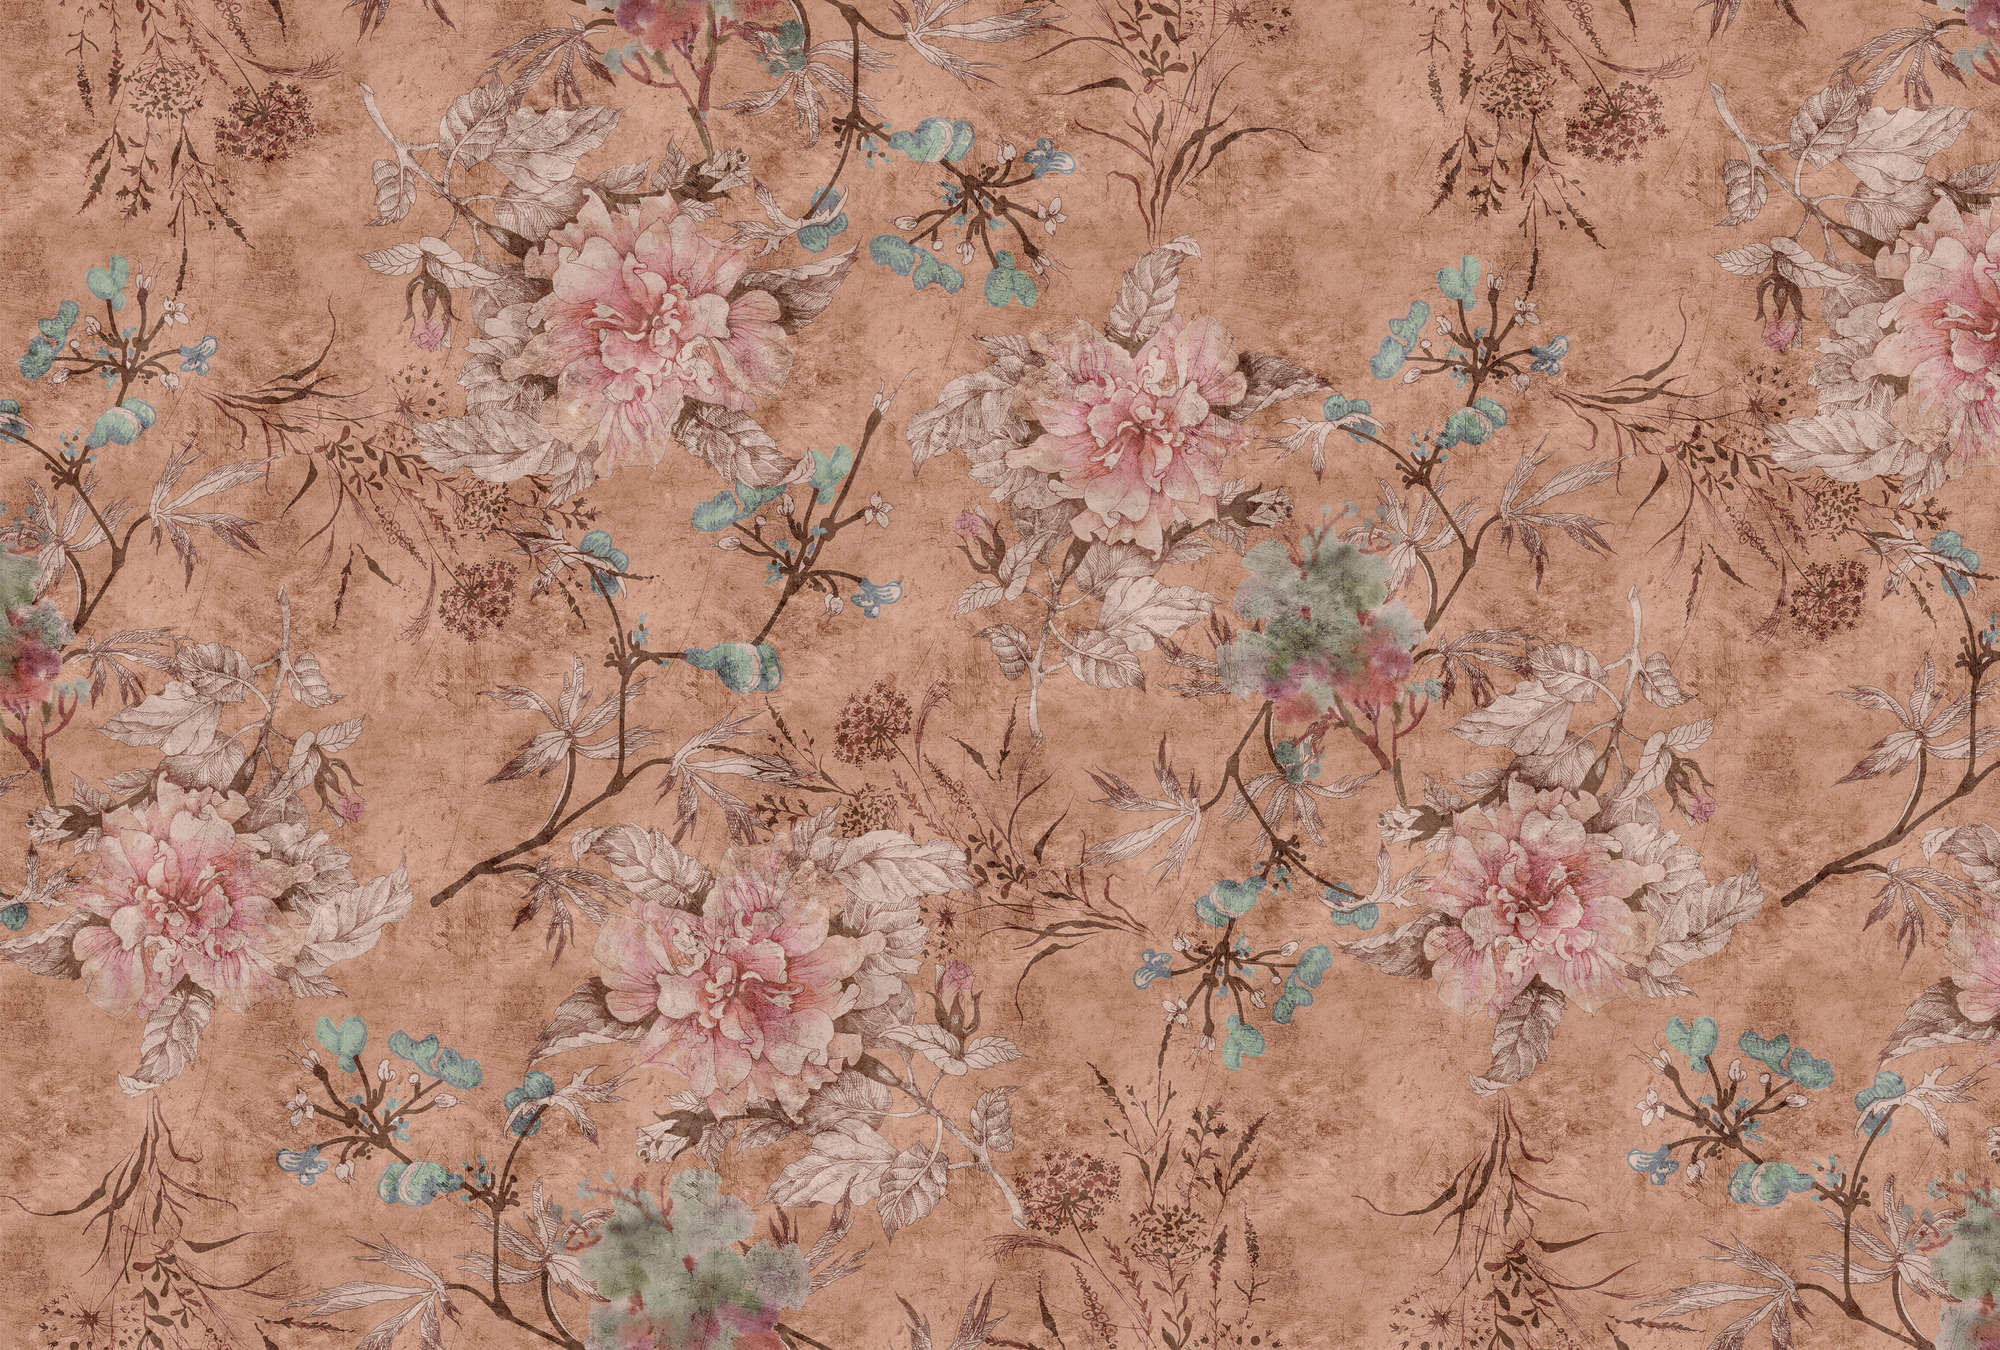             Tenderblossom 3 - papier peint imprimé numériquement motif fleurs style vintage - rose, rouge | intissé lisse mat
        